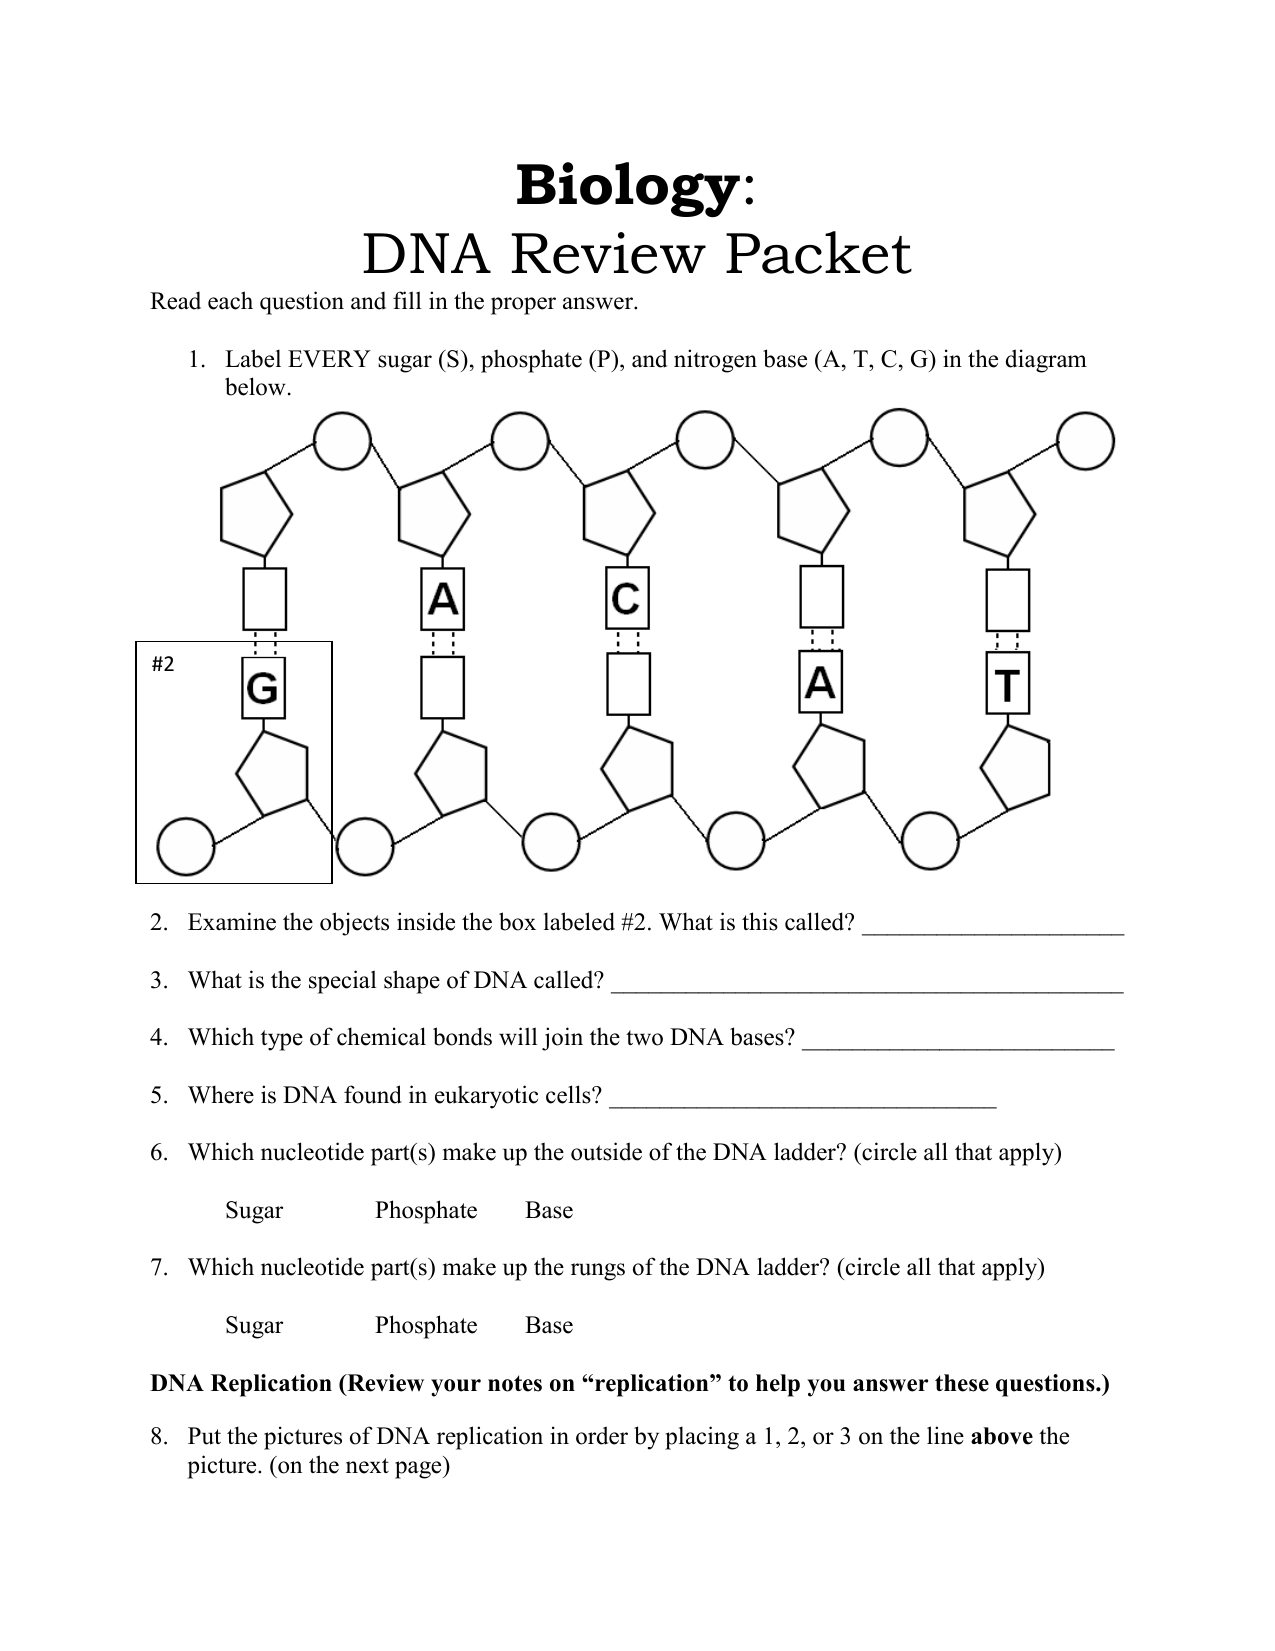 Dna replication worksheet answer key (1).pdf. 